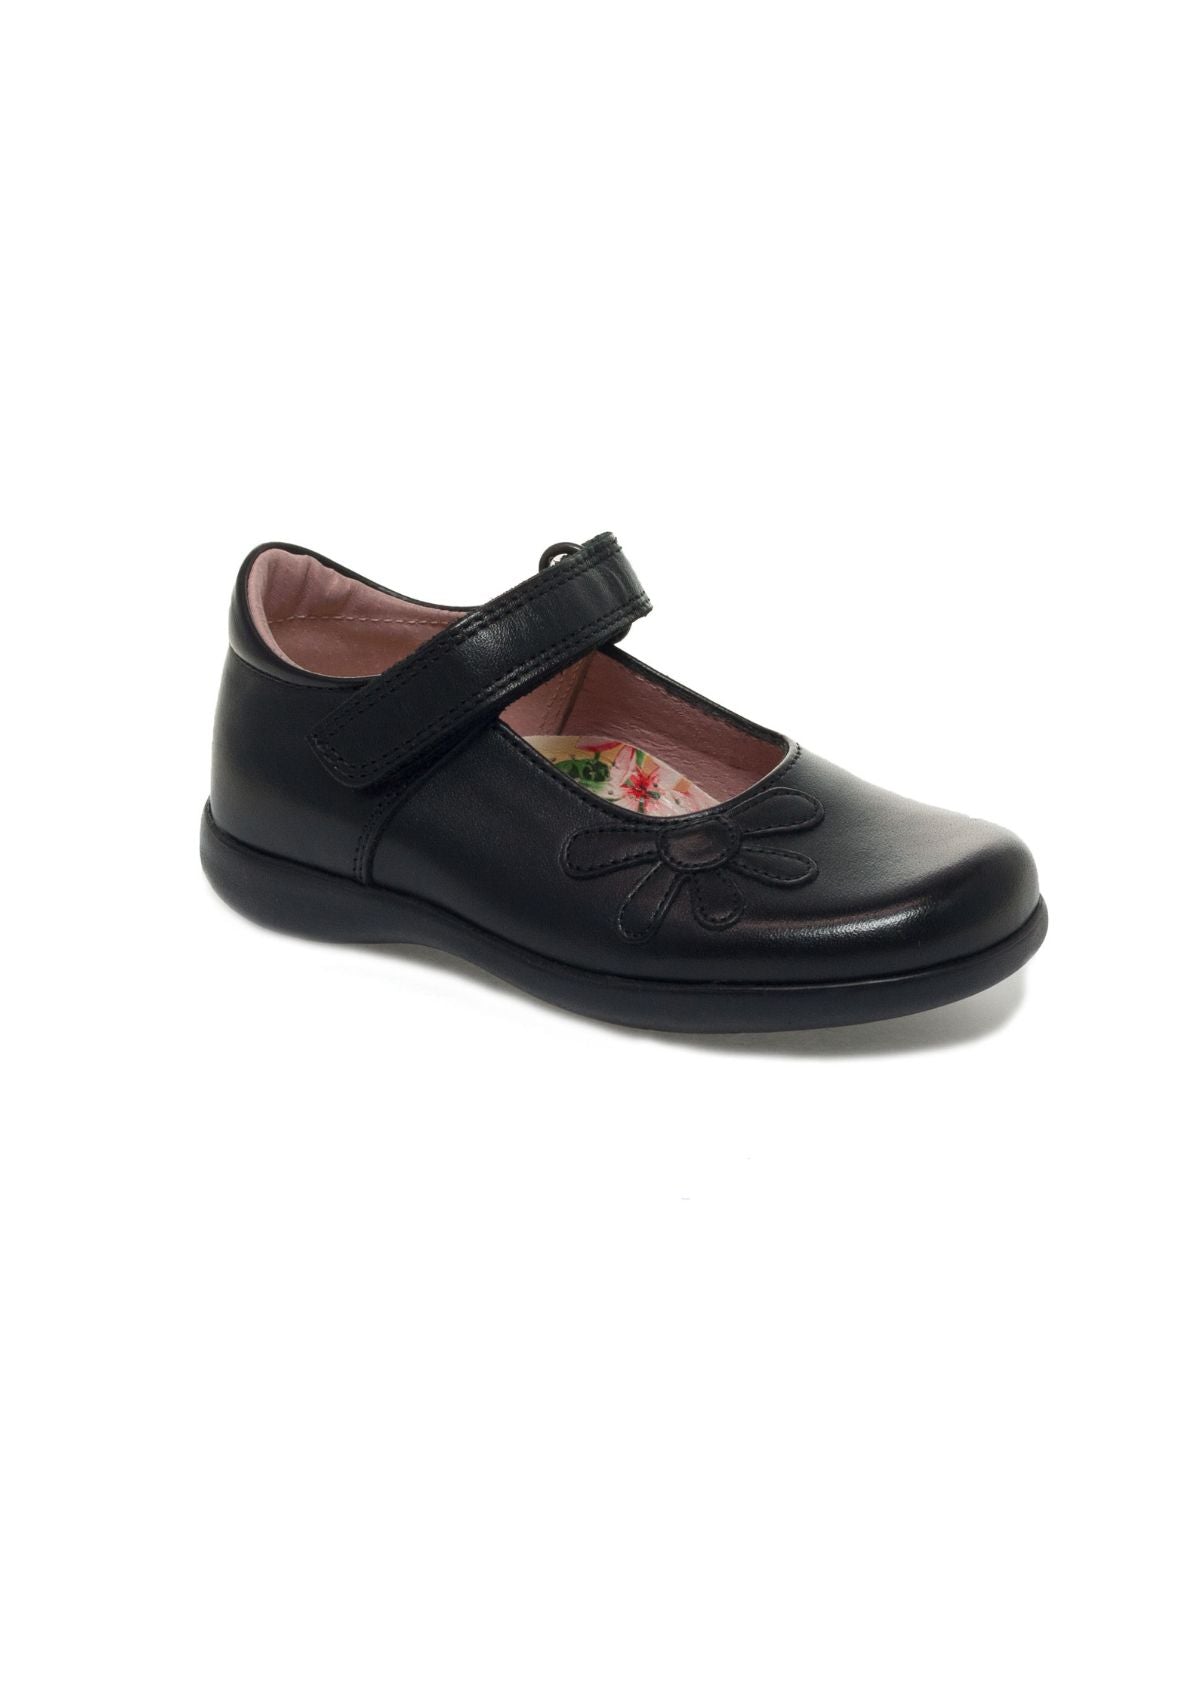 Petasil Girls School Shoes Bonnie Patent (Black Patent)